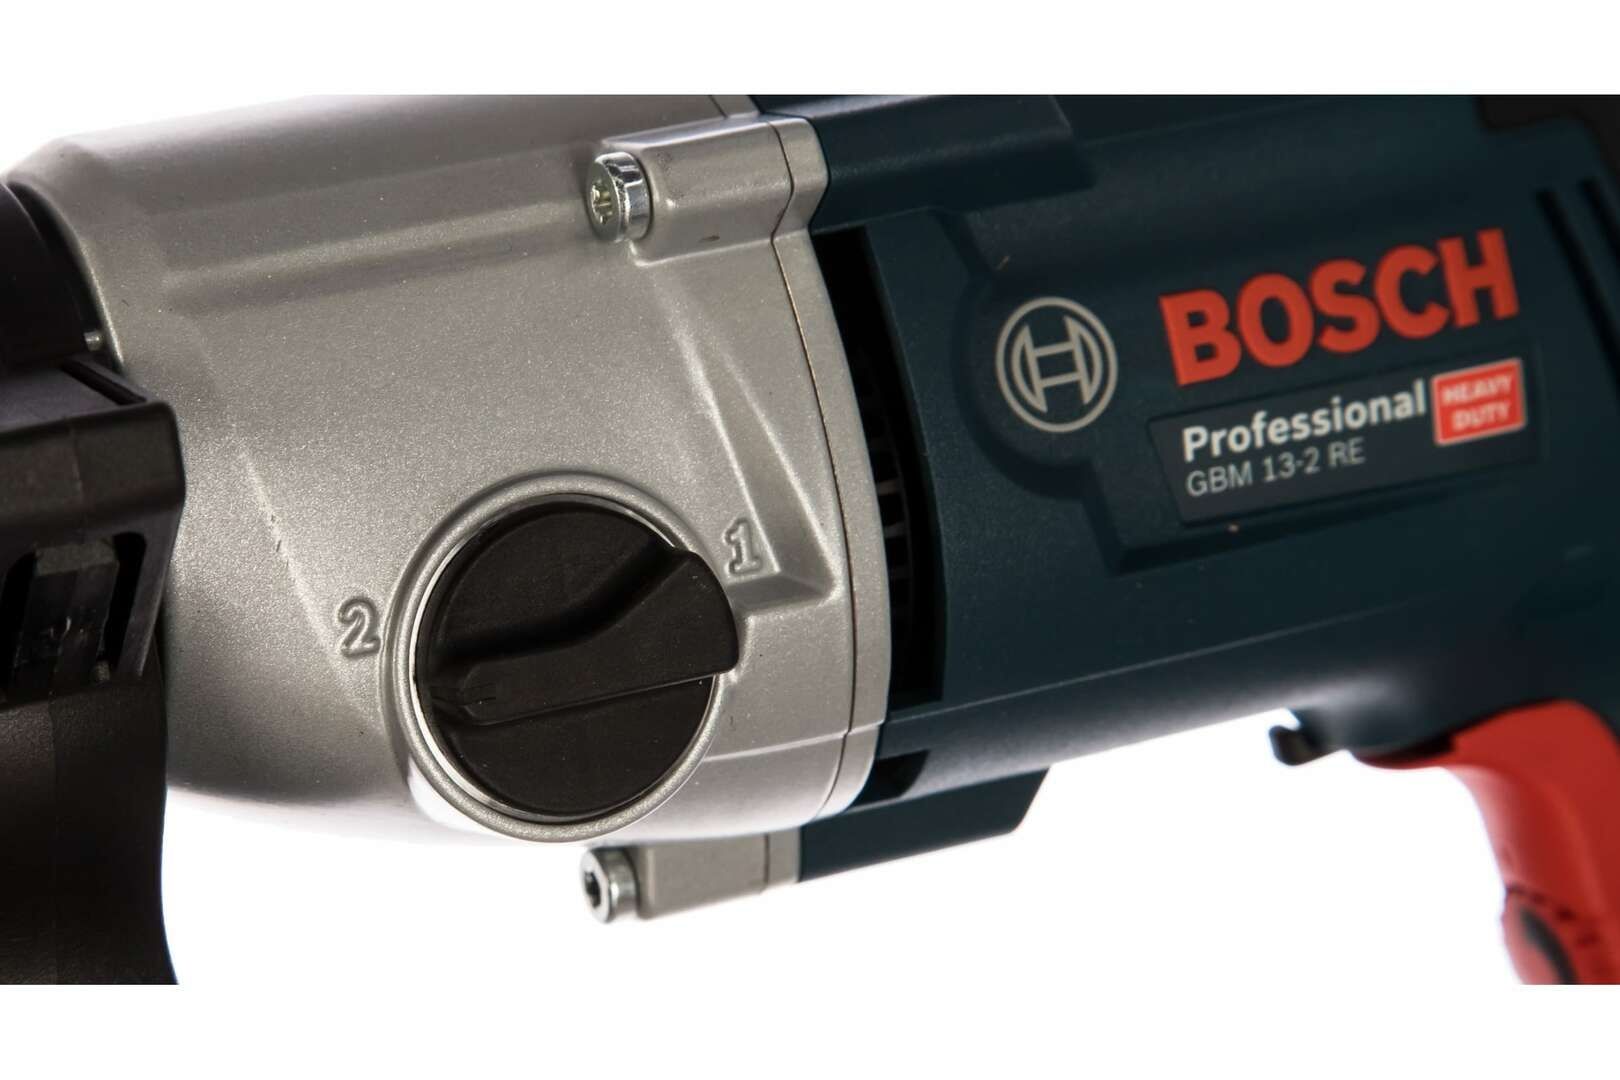 Электрическая дрель Bosch GBM 13-2 RE